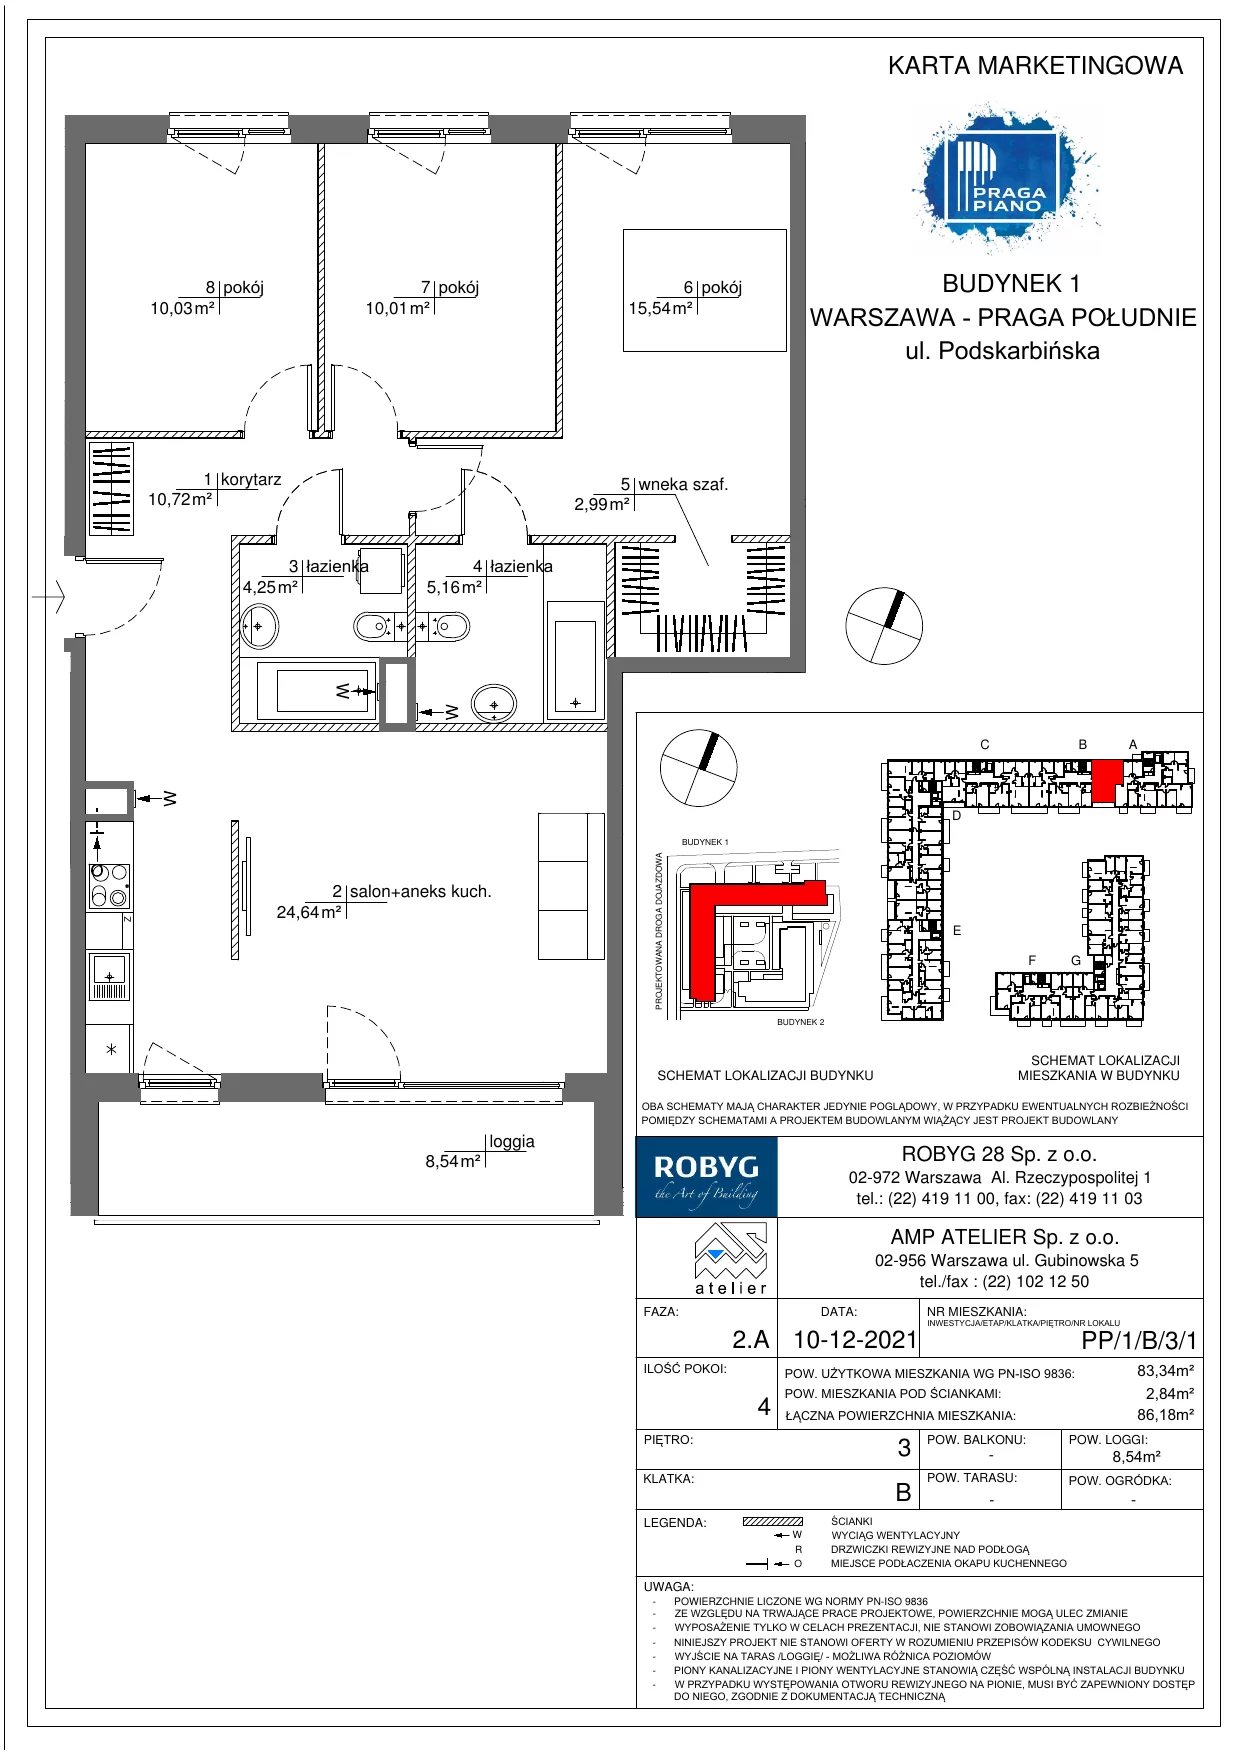 Mieszkanie 83,34 m², piętro 3, oferta nr PP/1/B/3/1, Praga Piano, Warszawa, Praga Południe, Kamionek, ul. Podskarbińska